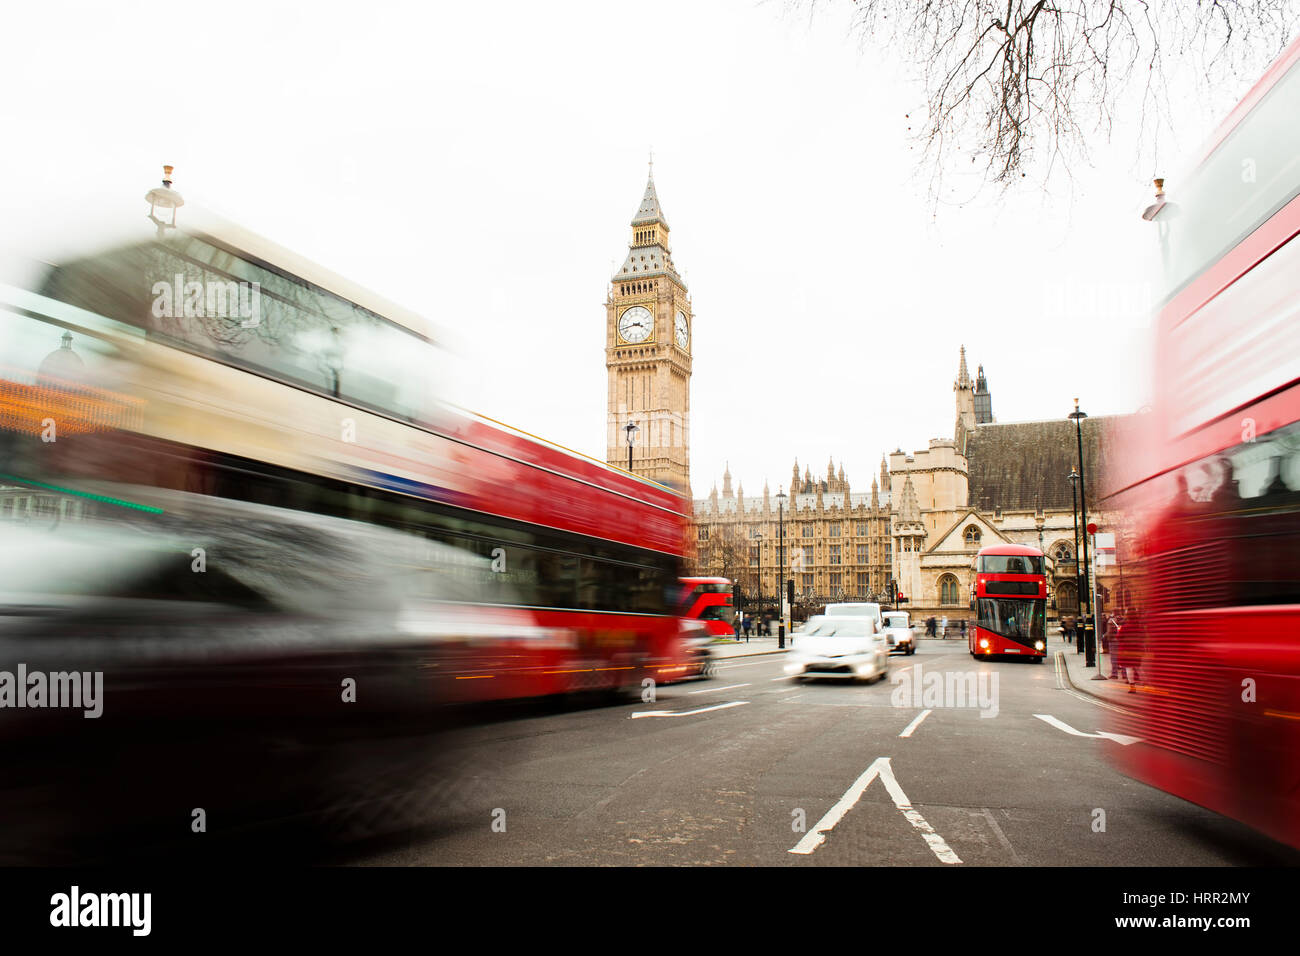 Il traffico nel centro di Londra City, una lunga esposizione foto del bus rosso in movimento, Big Ben in background Foto Stock